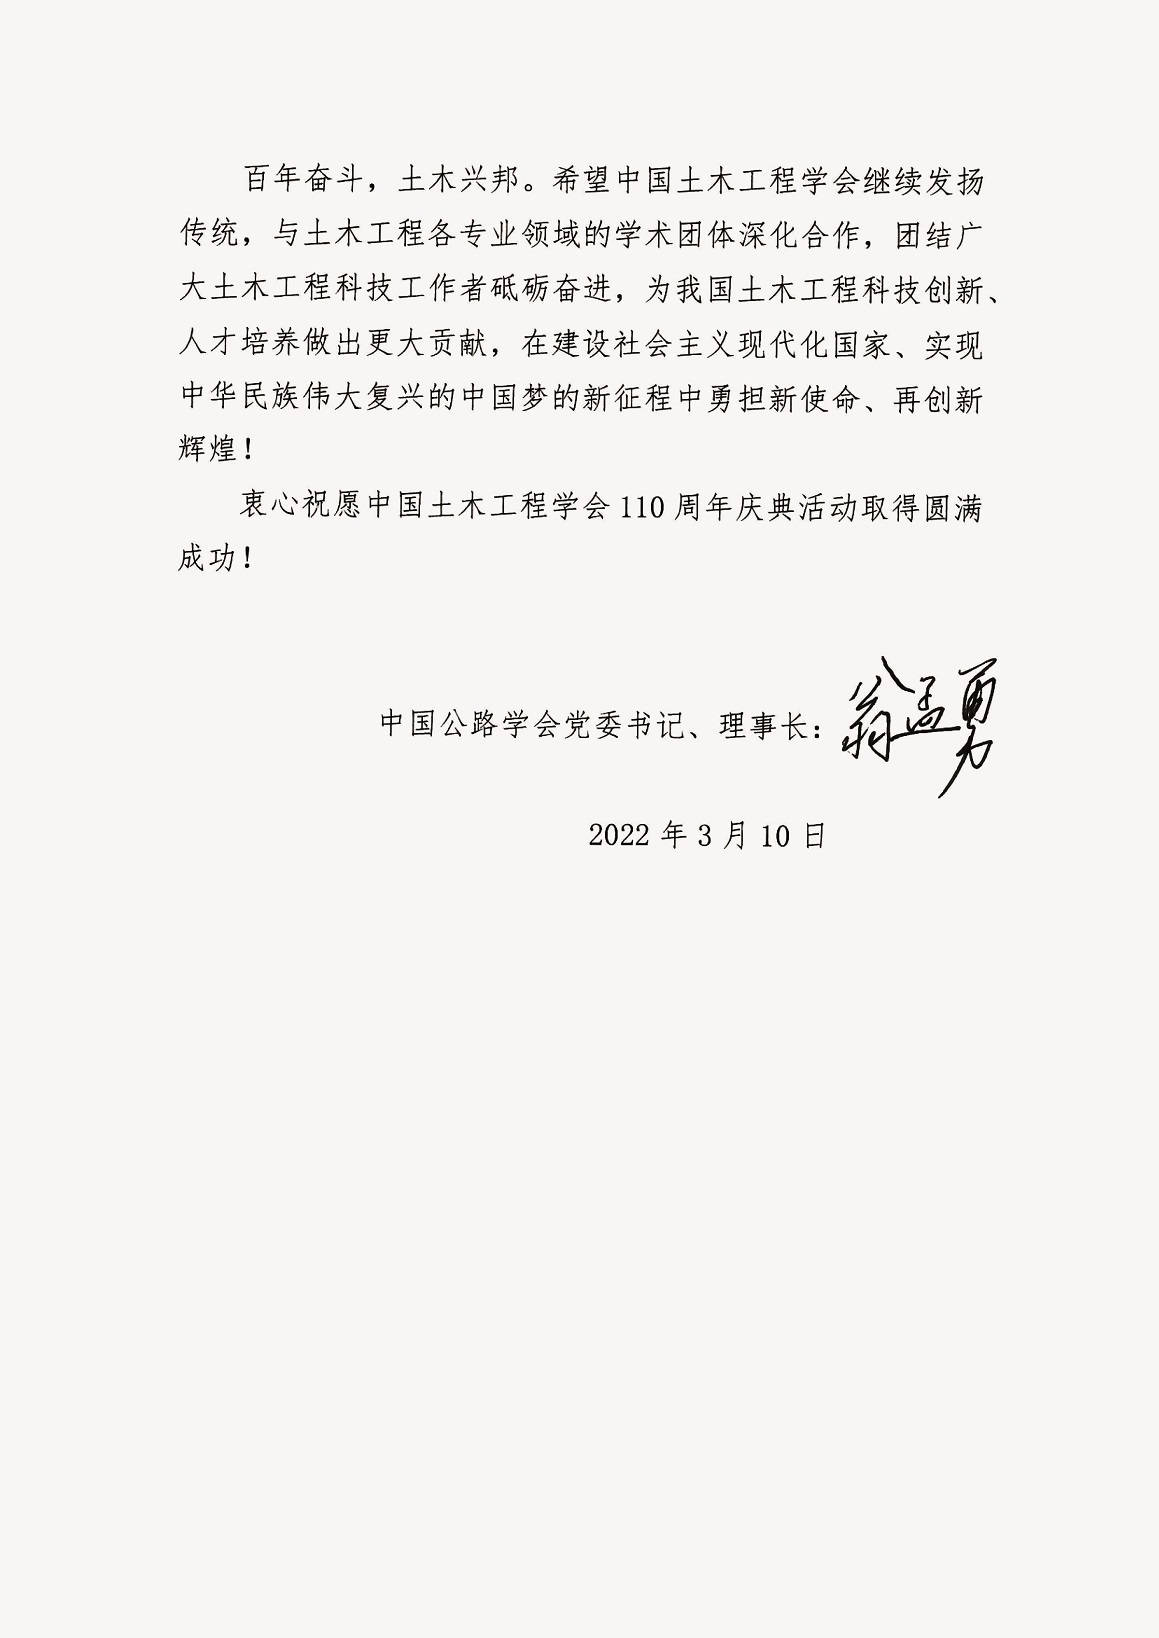 中国公路学会党委书记、理事长翁孟勇贺信